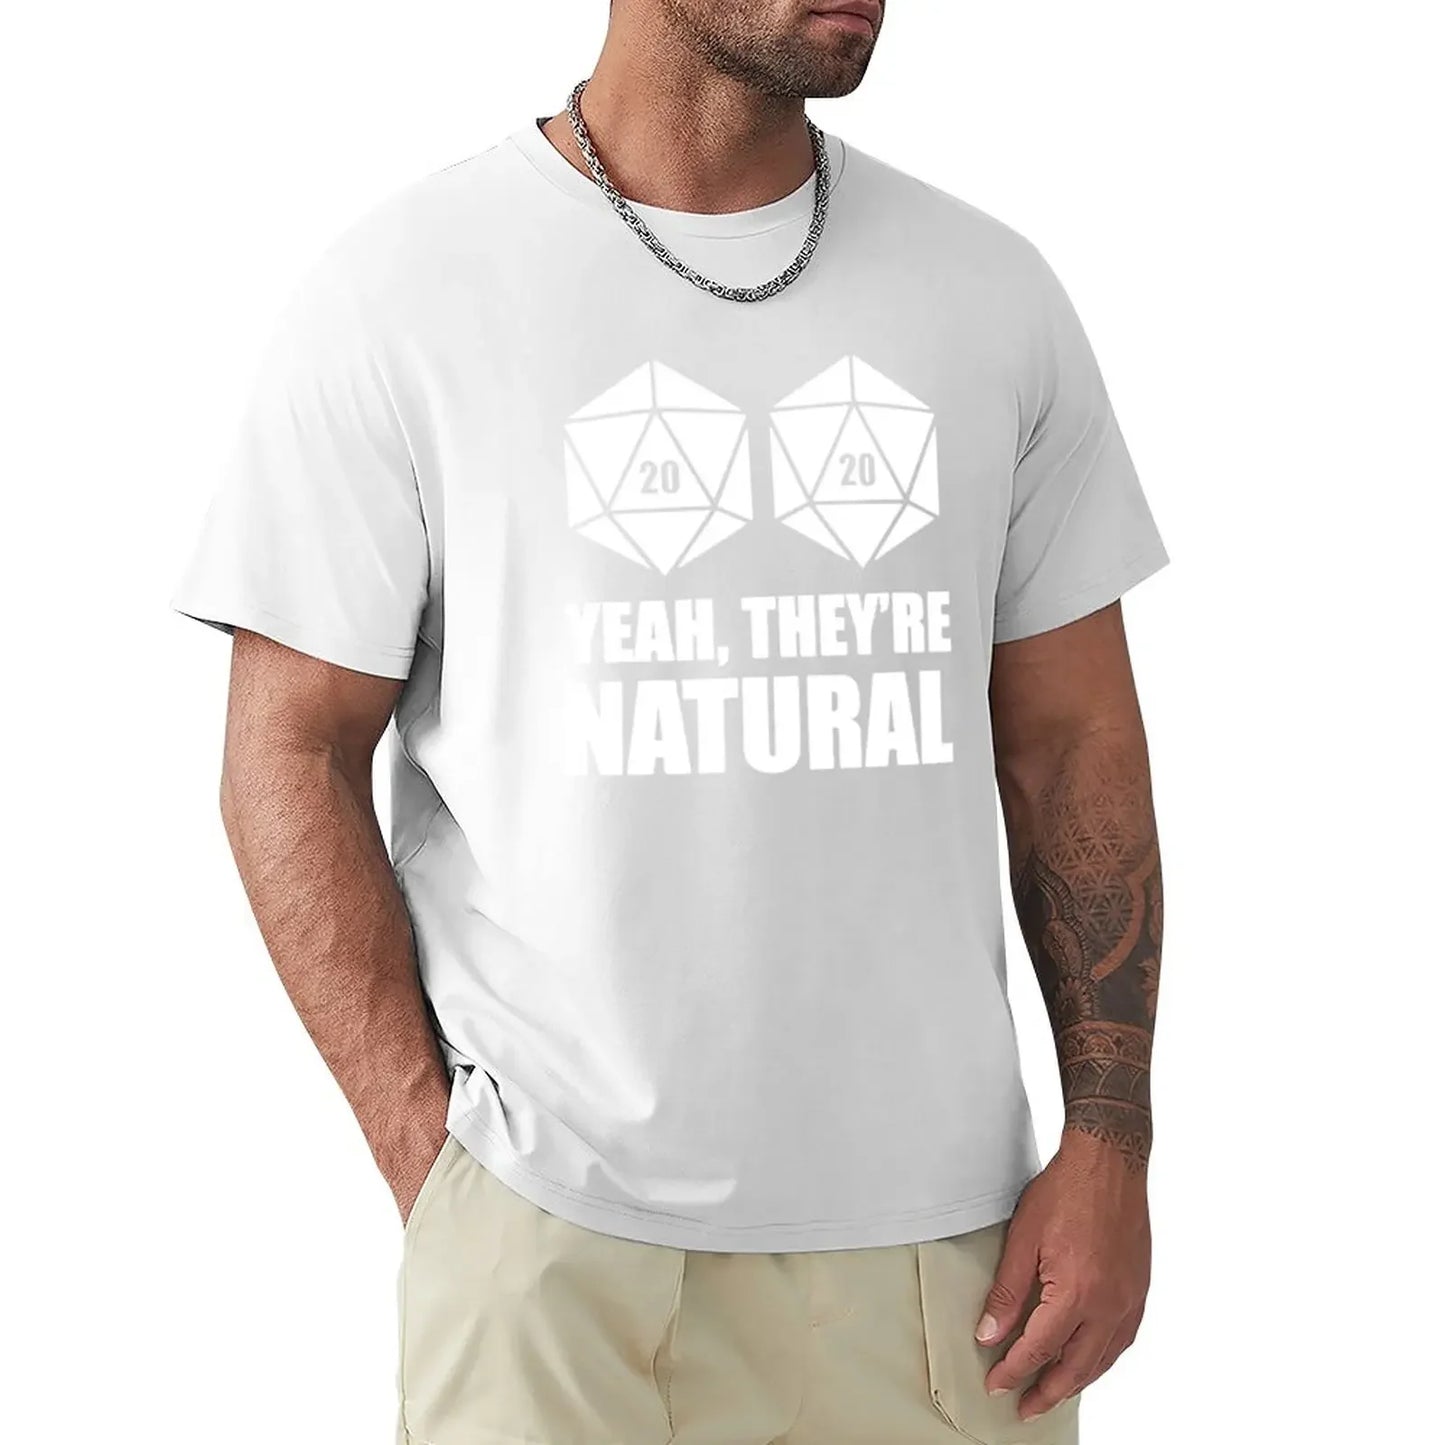 D20 ouais, ils sont naturels T-Shirt vêtements vintage sublimes hommes t-shirts en coton